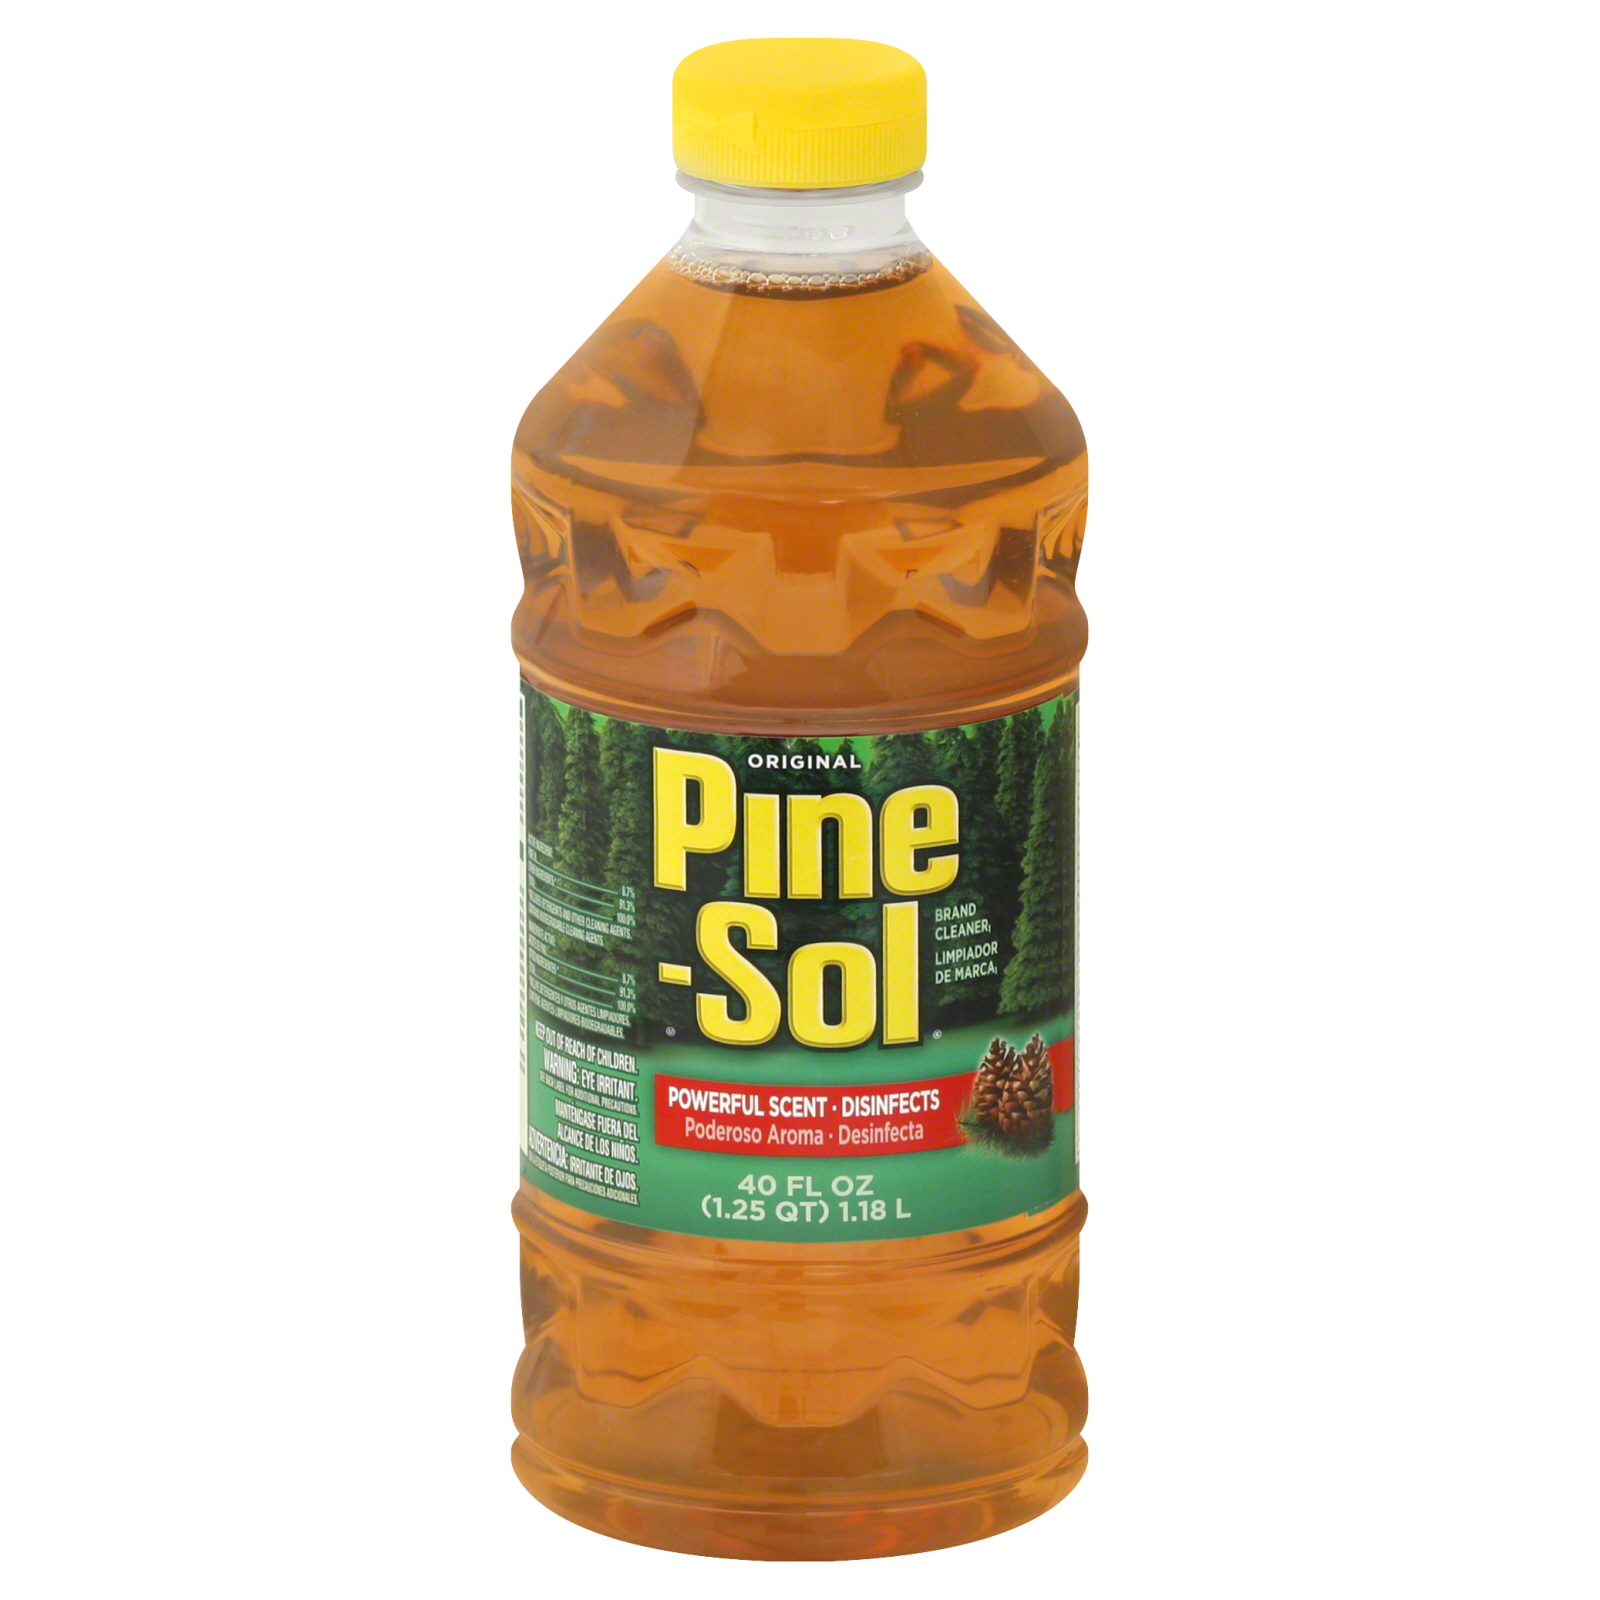 Pine-Sol Cleaner, Original 48 fl oz (1.5 qt) 1.41 lt